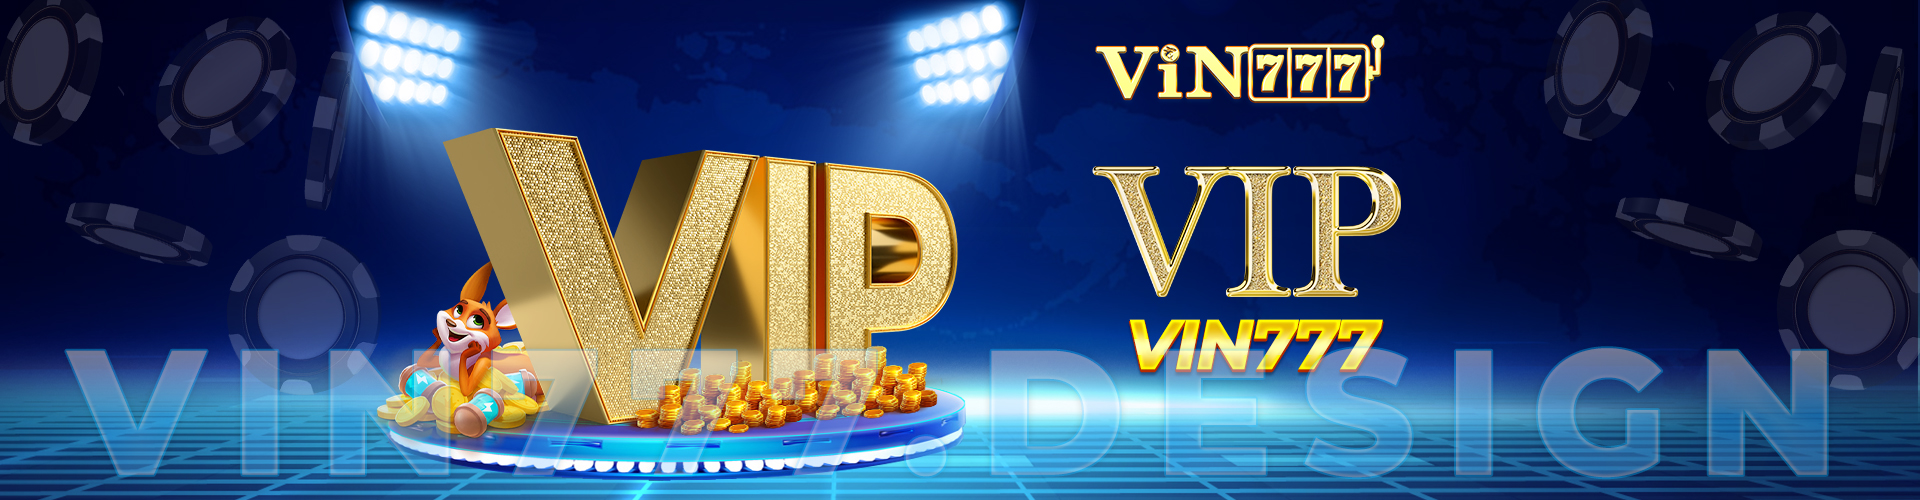 Banner Vip Vin777